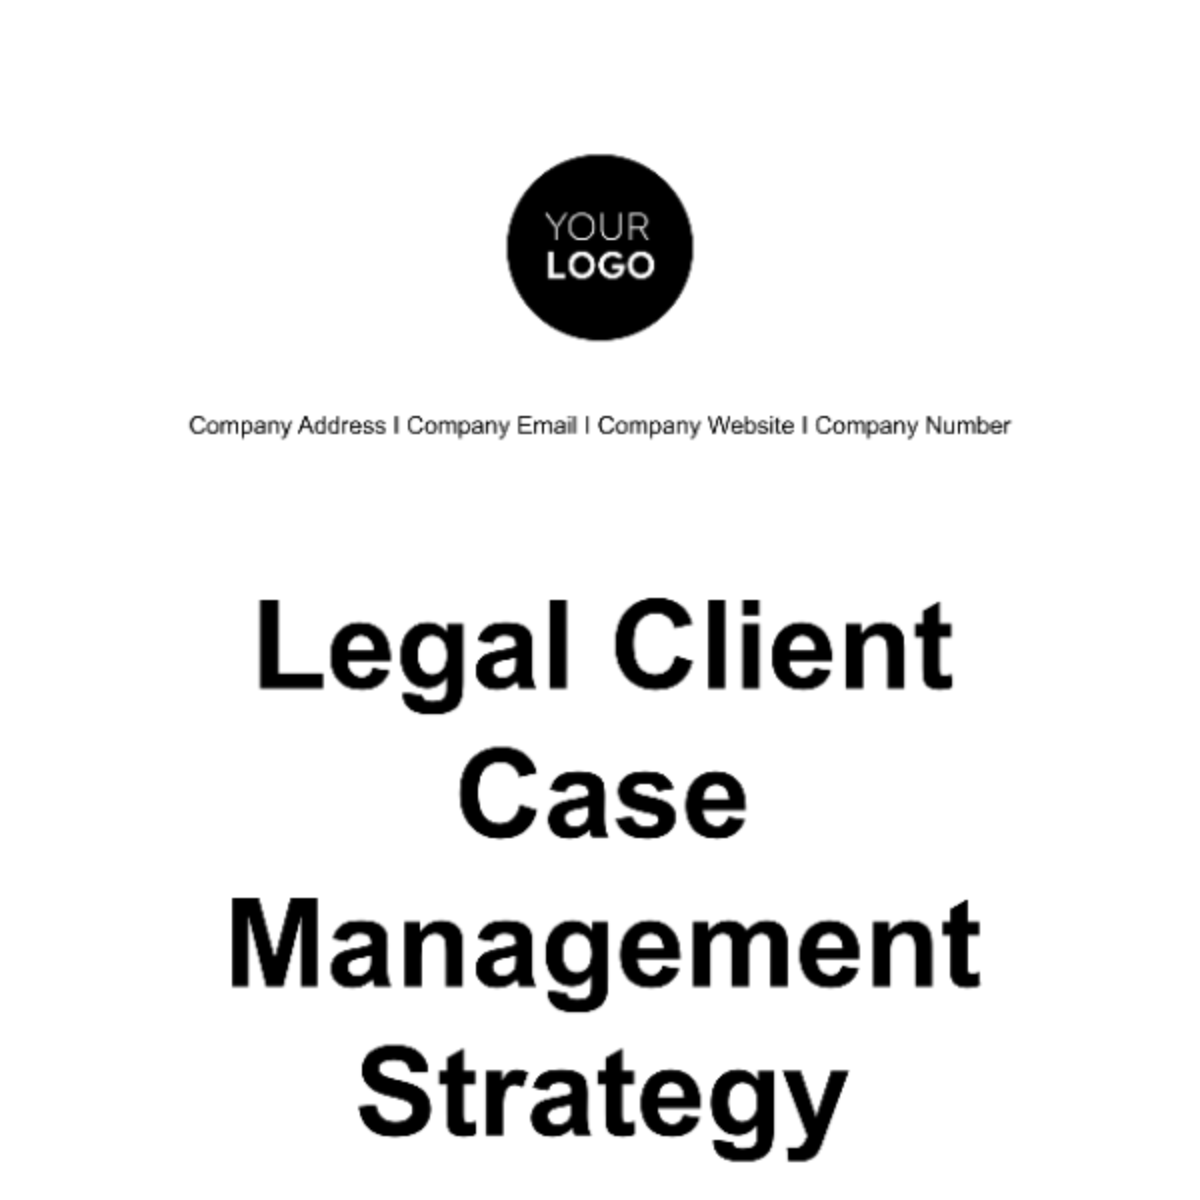 Legal Client Case Management Strategy Template